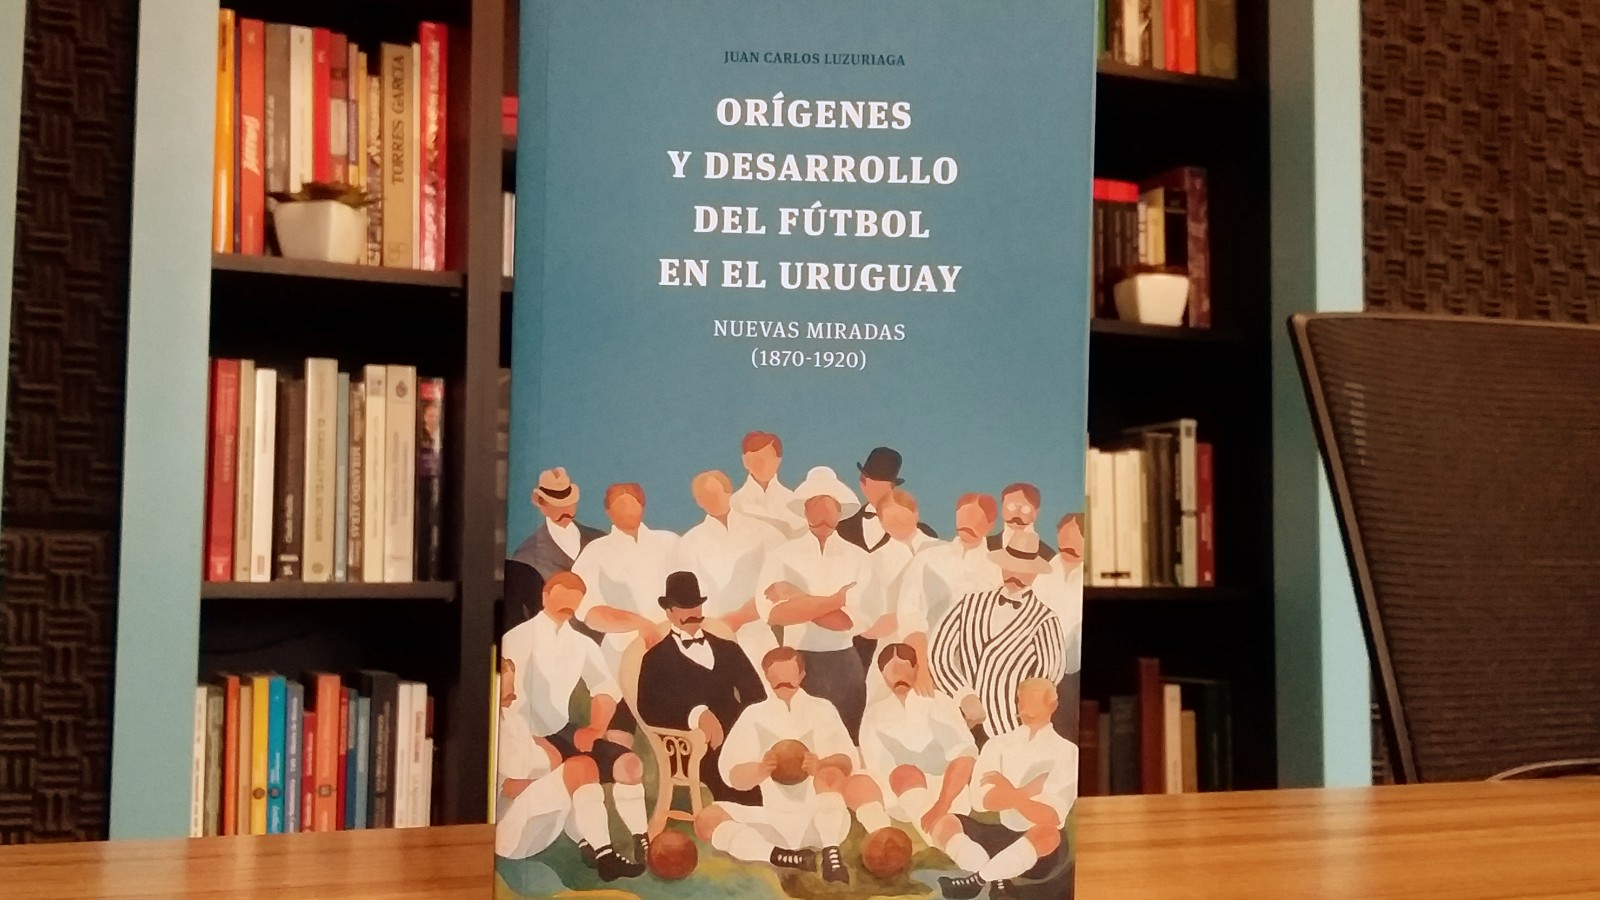  La Conversación: Con Juan Carlos Luzuriaga, investigador y escritor, autor de Orígenes y desarrollo del fútbol en Uruguay